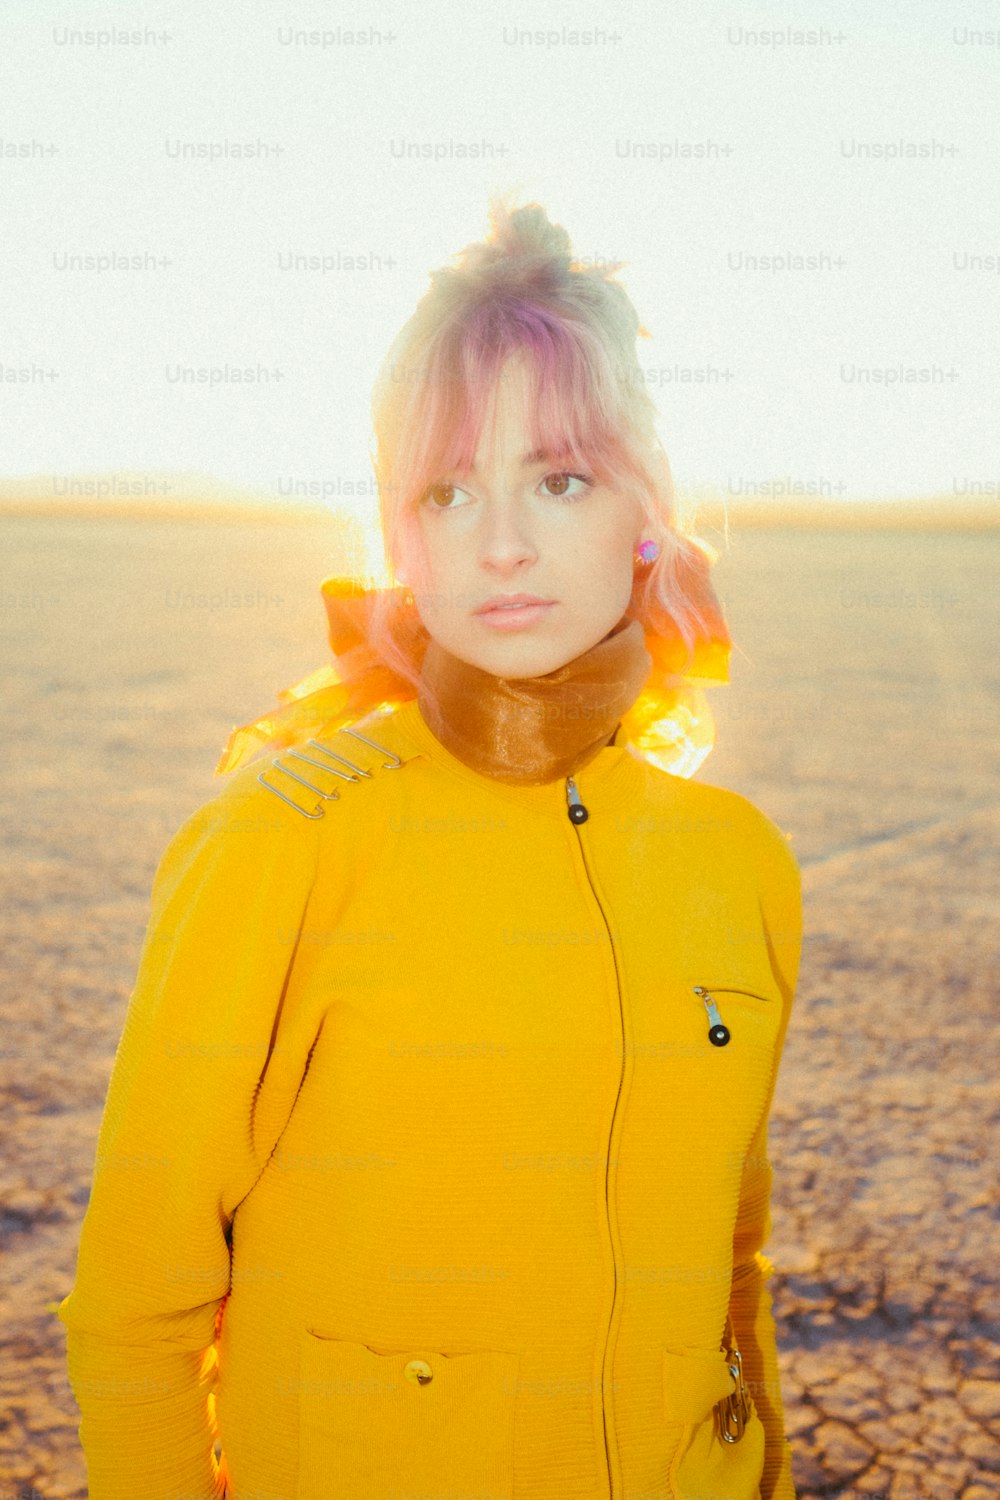 Eine Frau in einer gelben Jacke, die in der Wüste steht